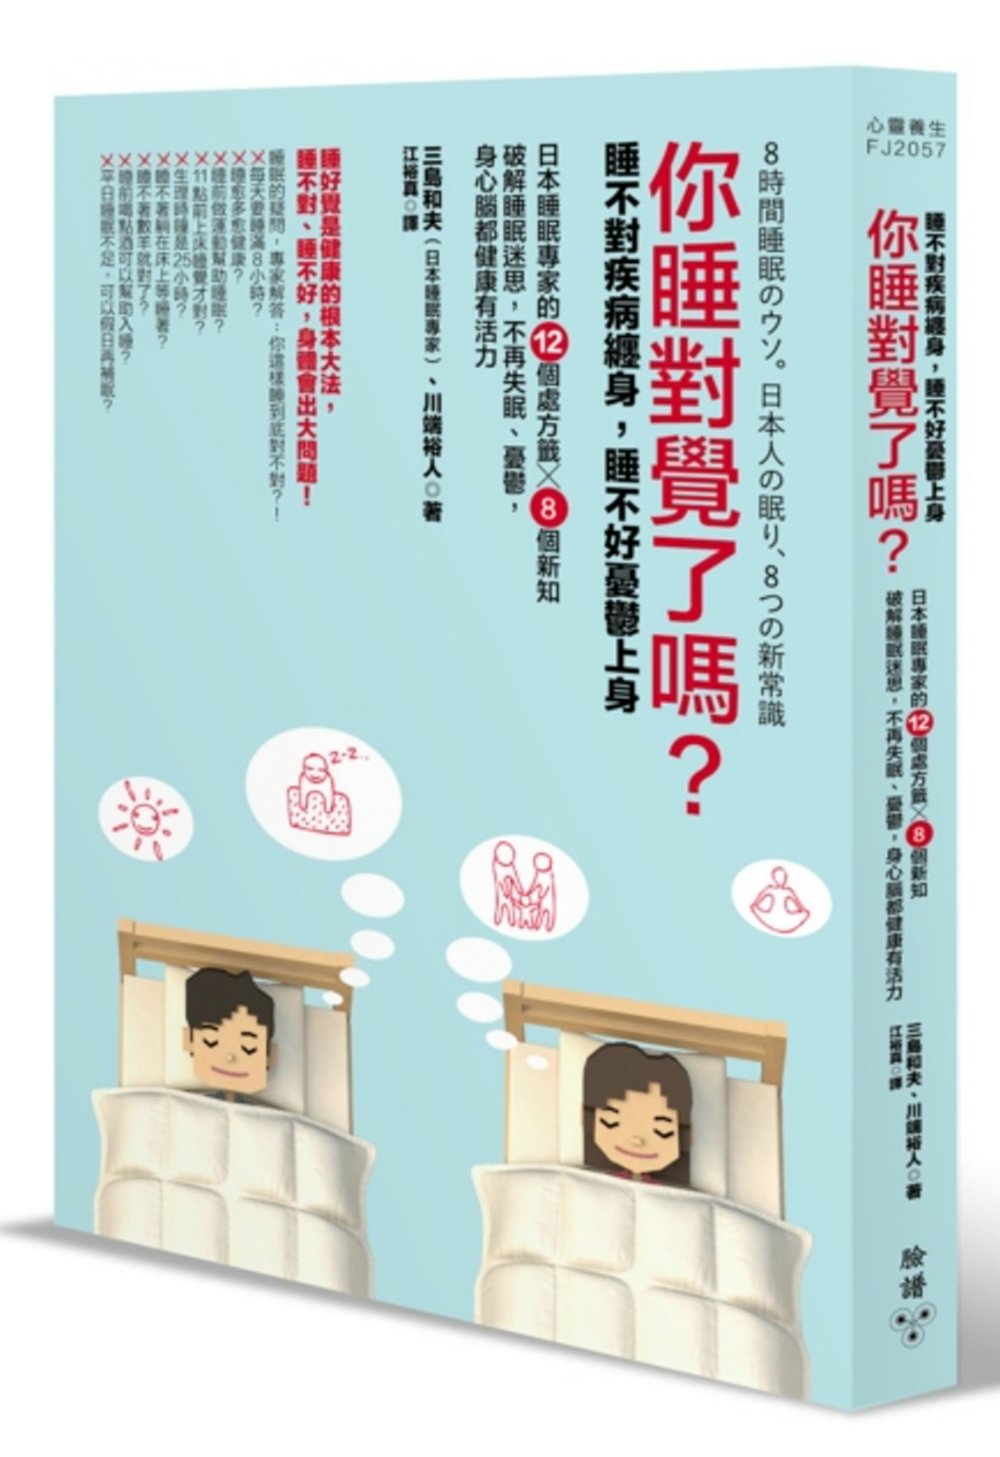 你睡對覺了嗎？：睡不對疾病纏身，睡不好憂鬱上身。日本睡眠專家...